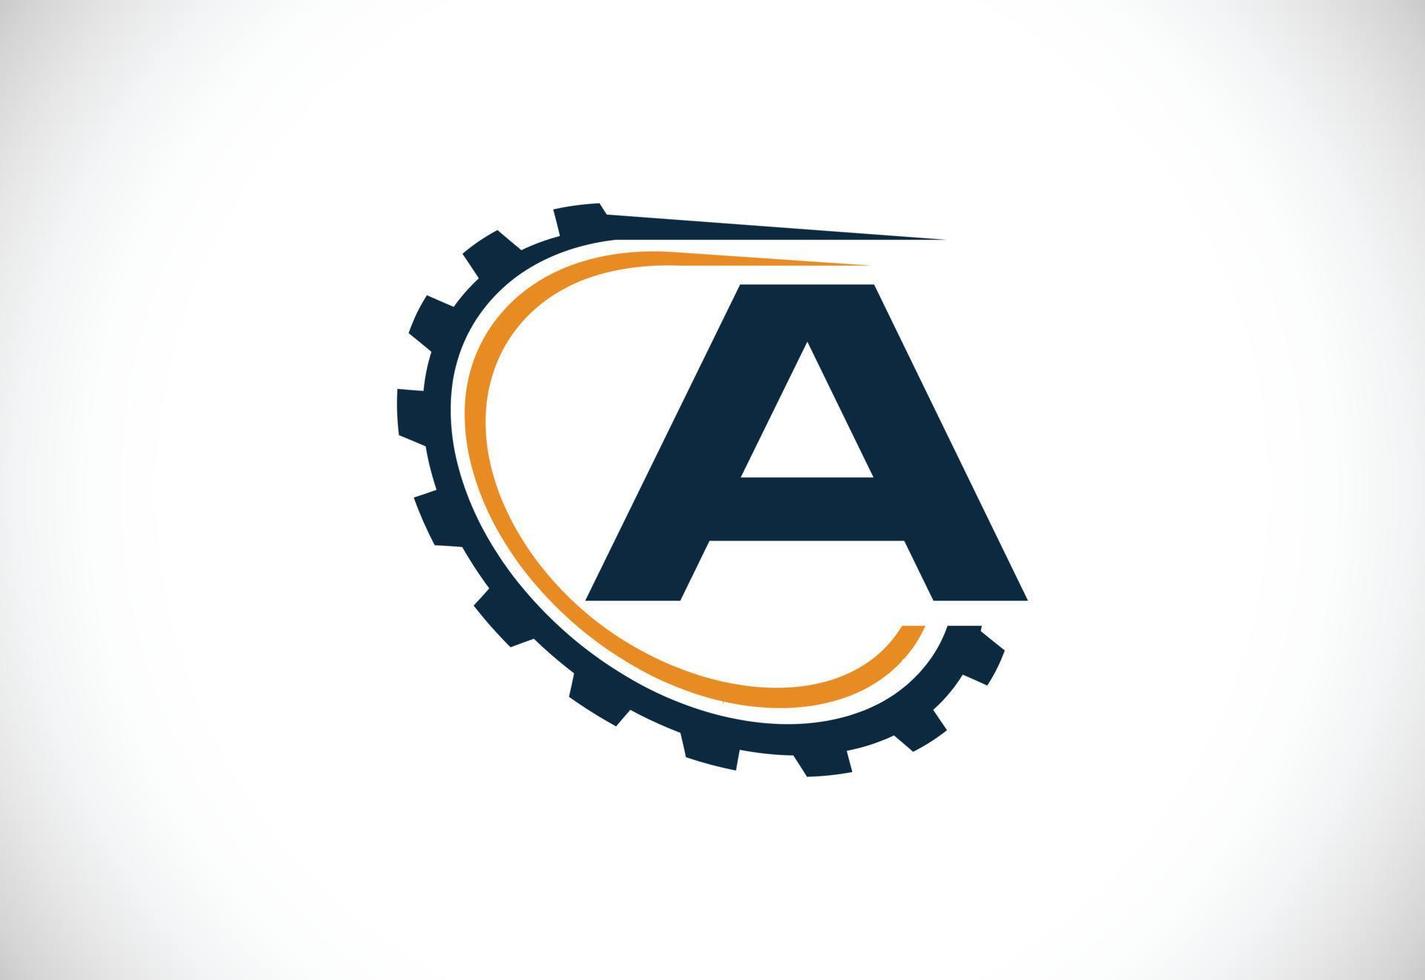 första en alfabet med en redskap. redskap ingenjör logotyp design. logotyp för bil, mekanisk, teknologi, miljö, reparera företag, och företag identitet vektor